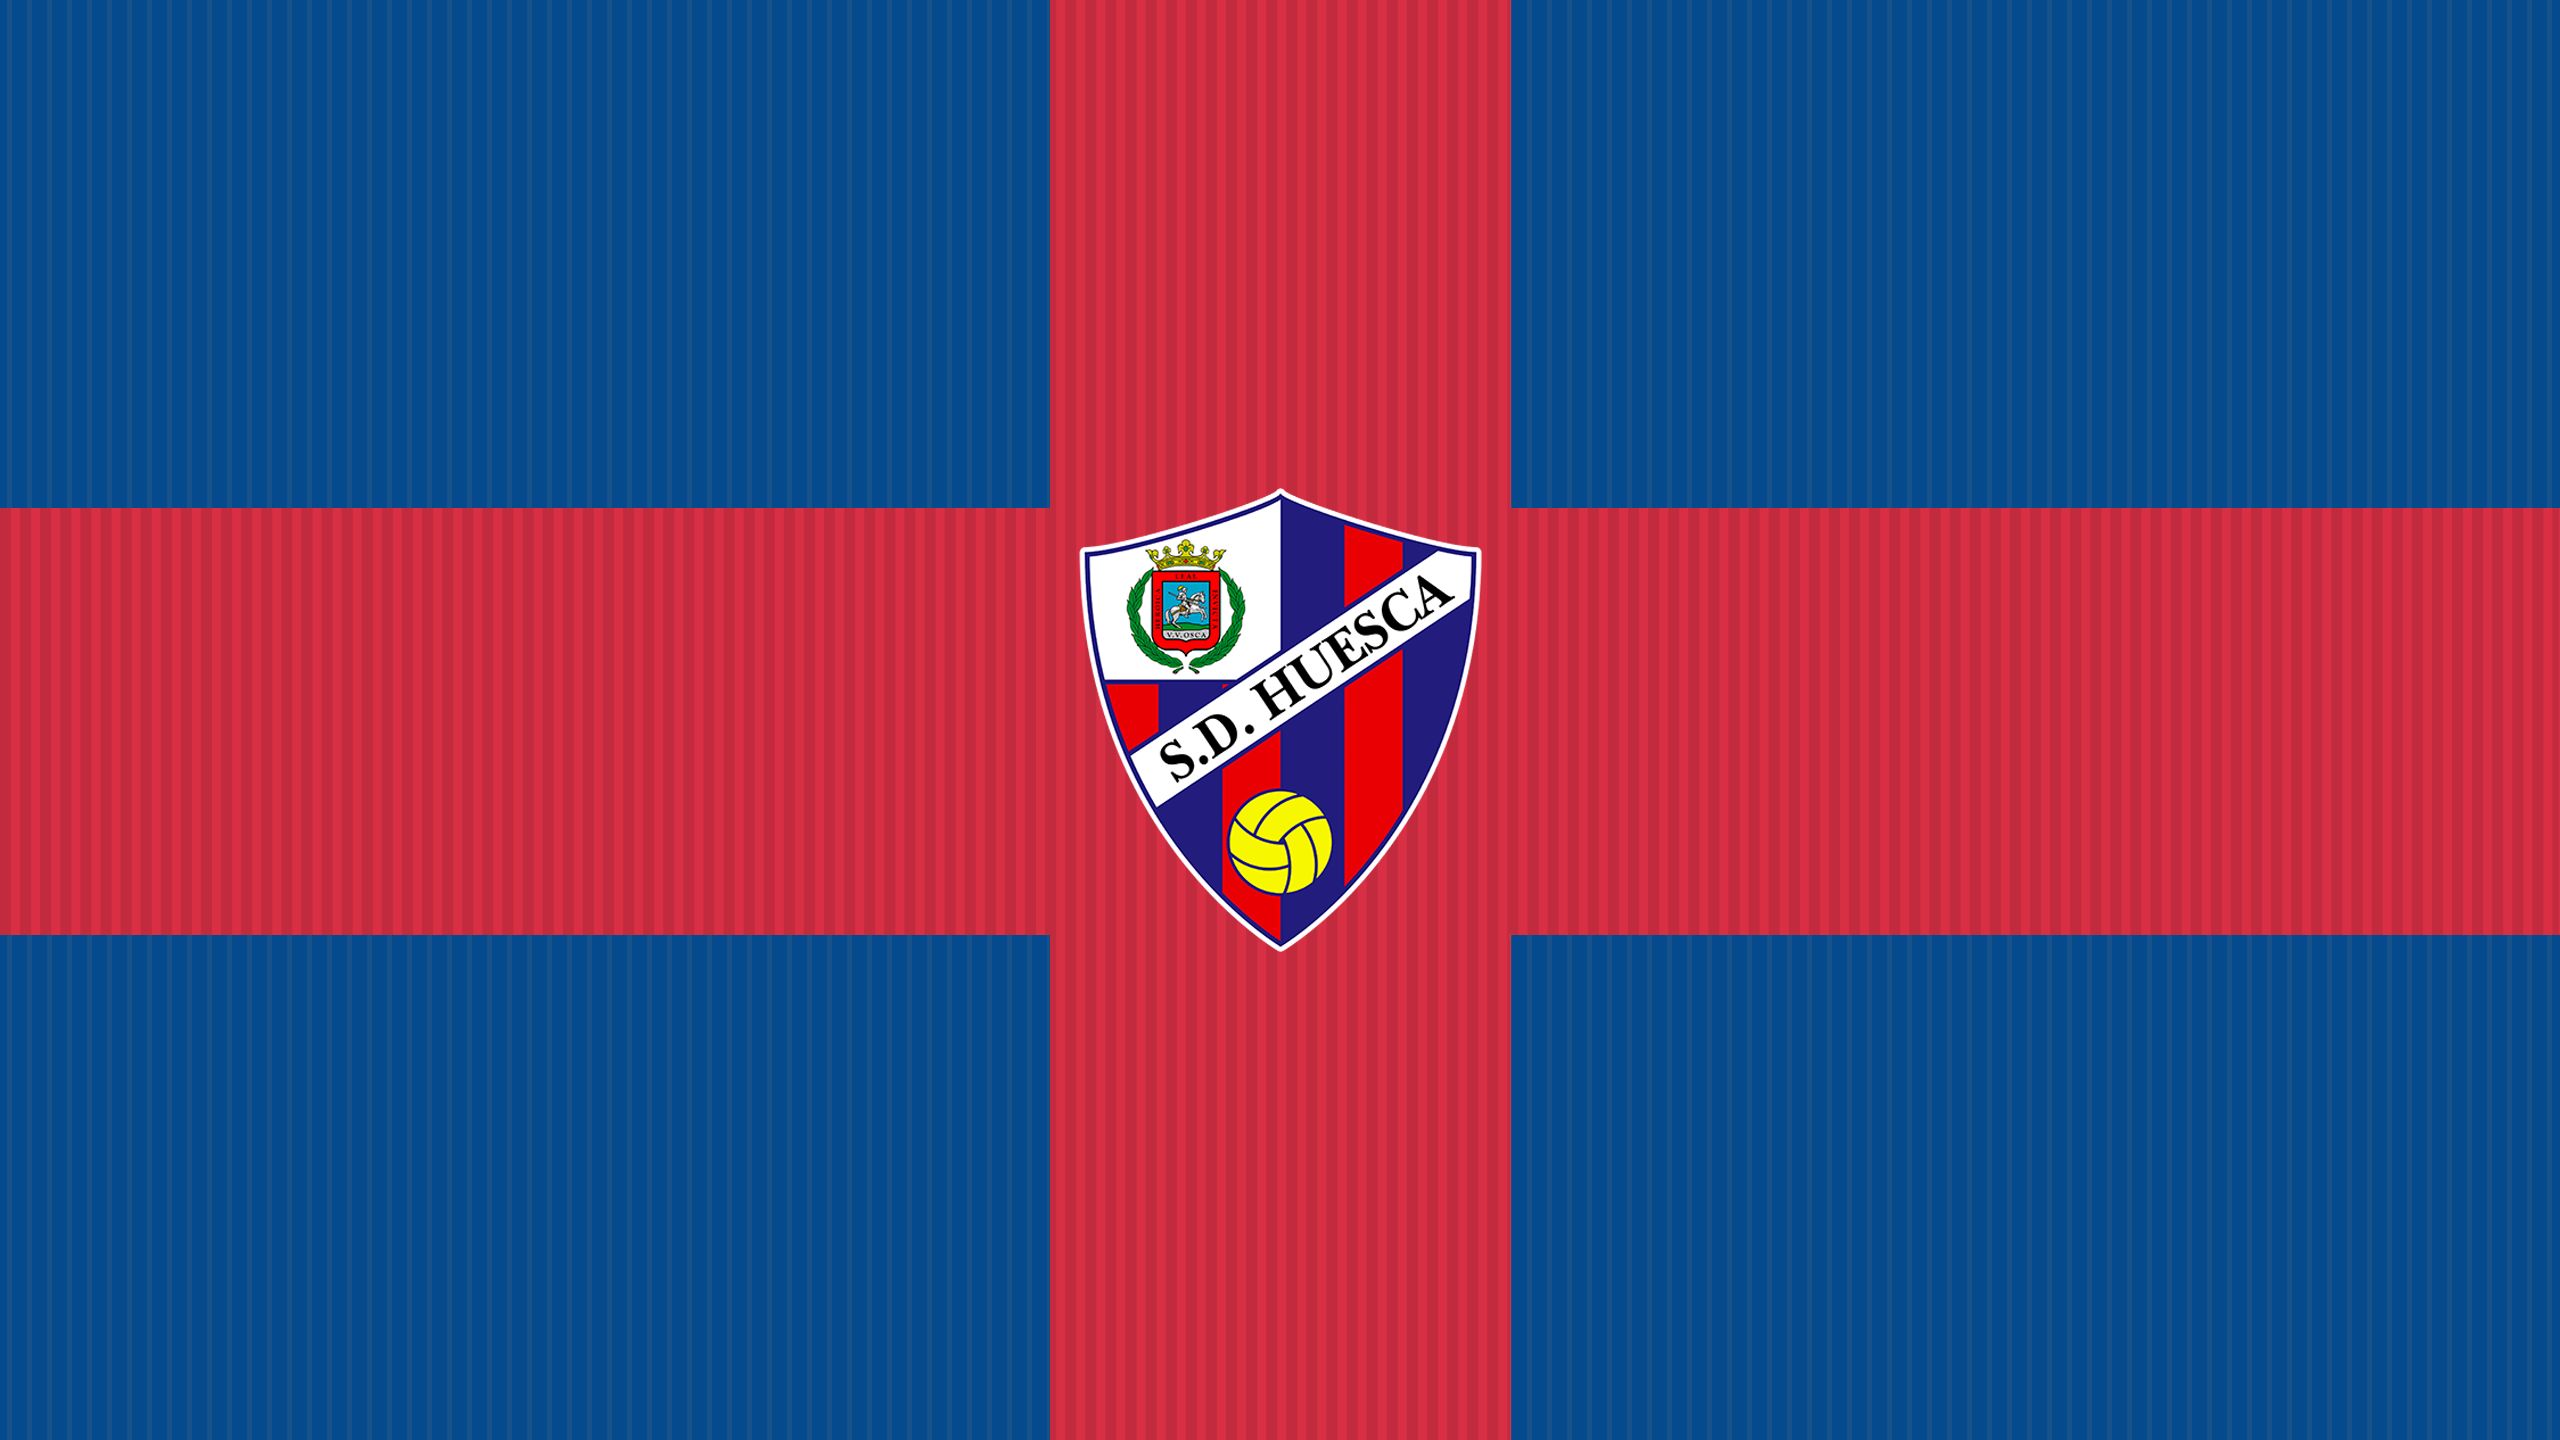 Baixar papel de parede para celular de Esportes, Futebol, Logotipo, Emblema, Sd Huesca gratuito.